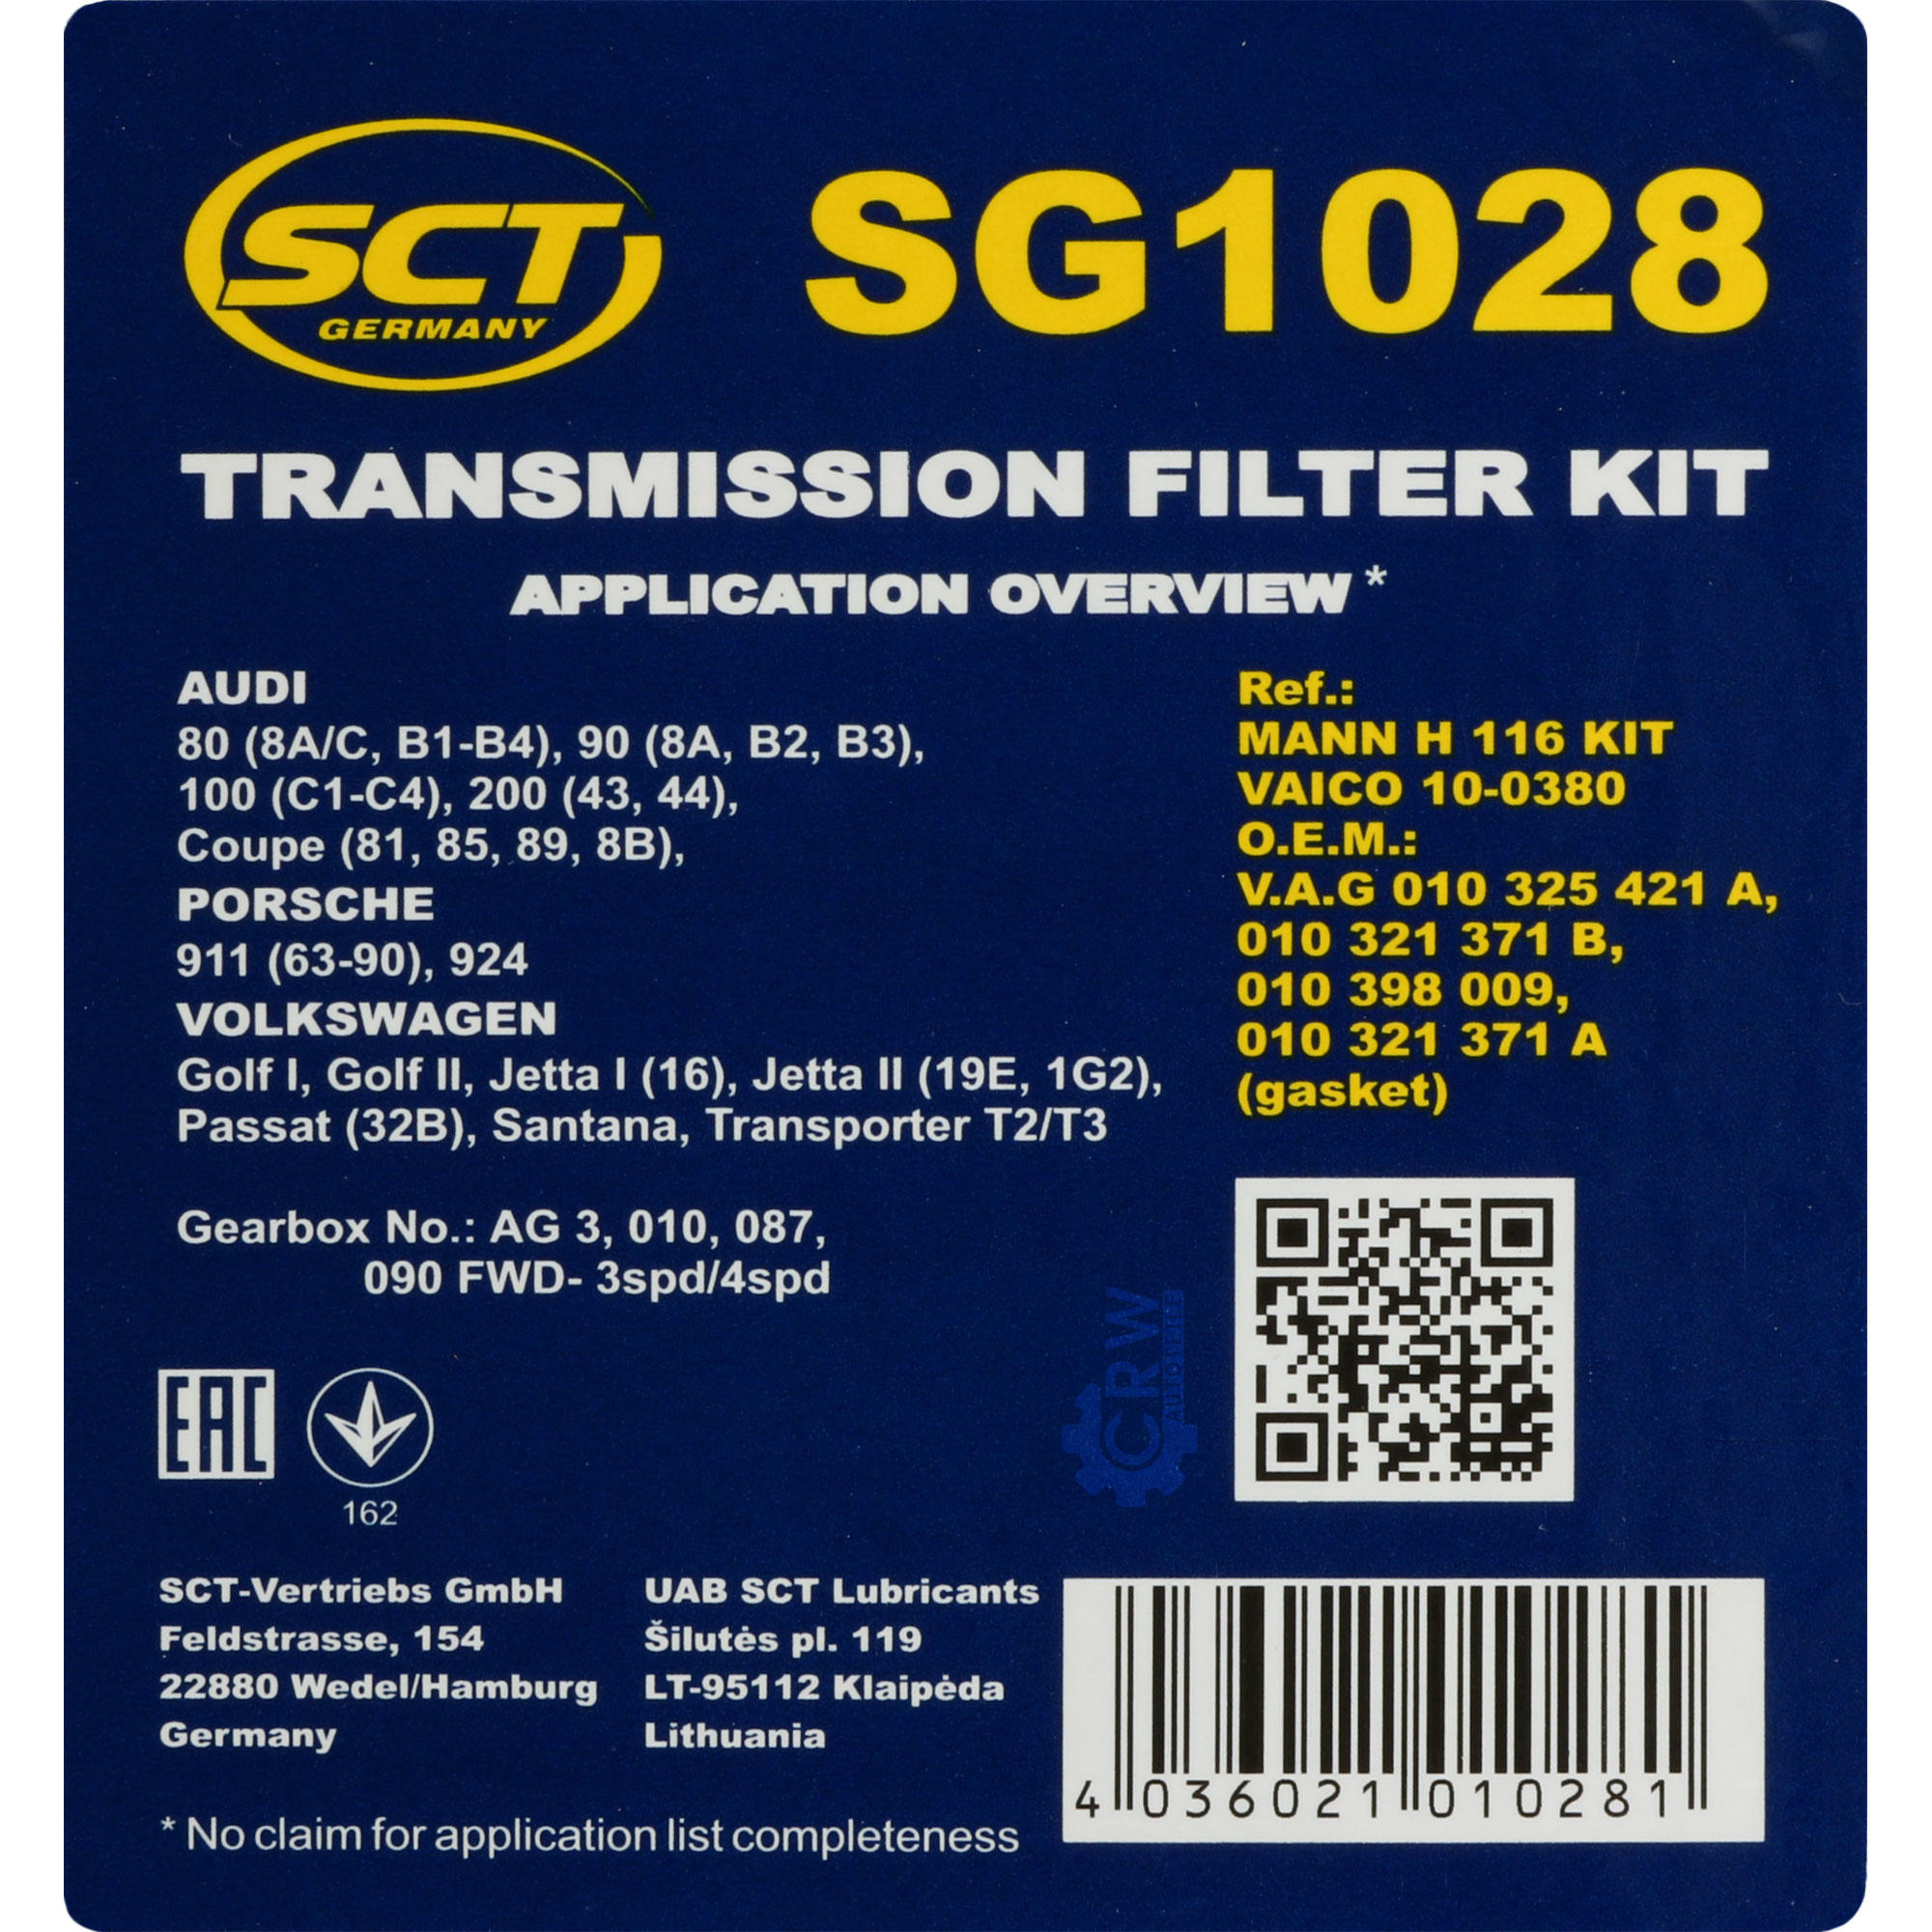 SCT Getriebeölfilter Hydraulikfiltersatz für Automatikgetriebe SG 1028